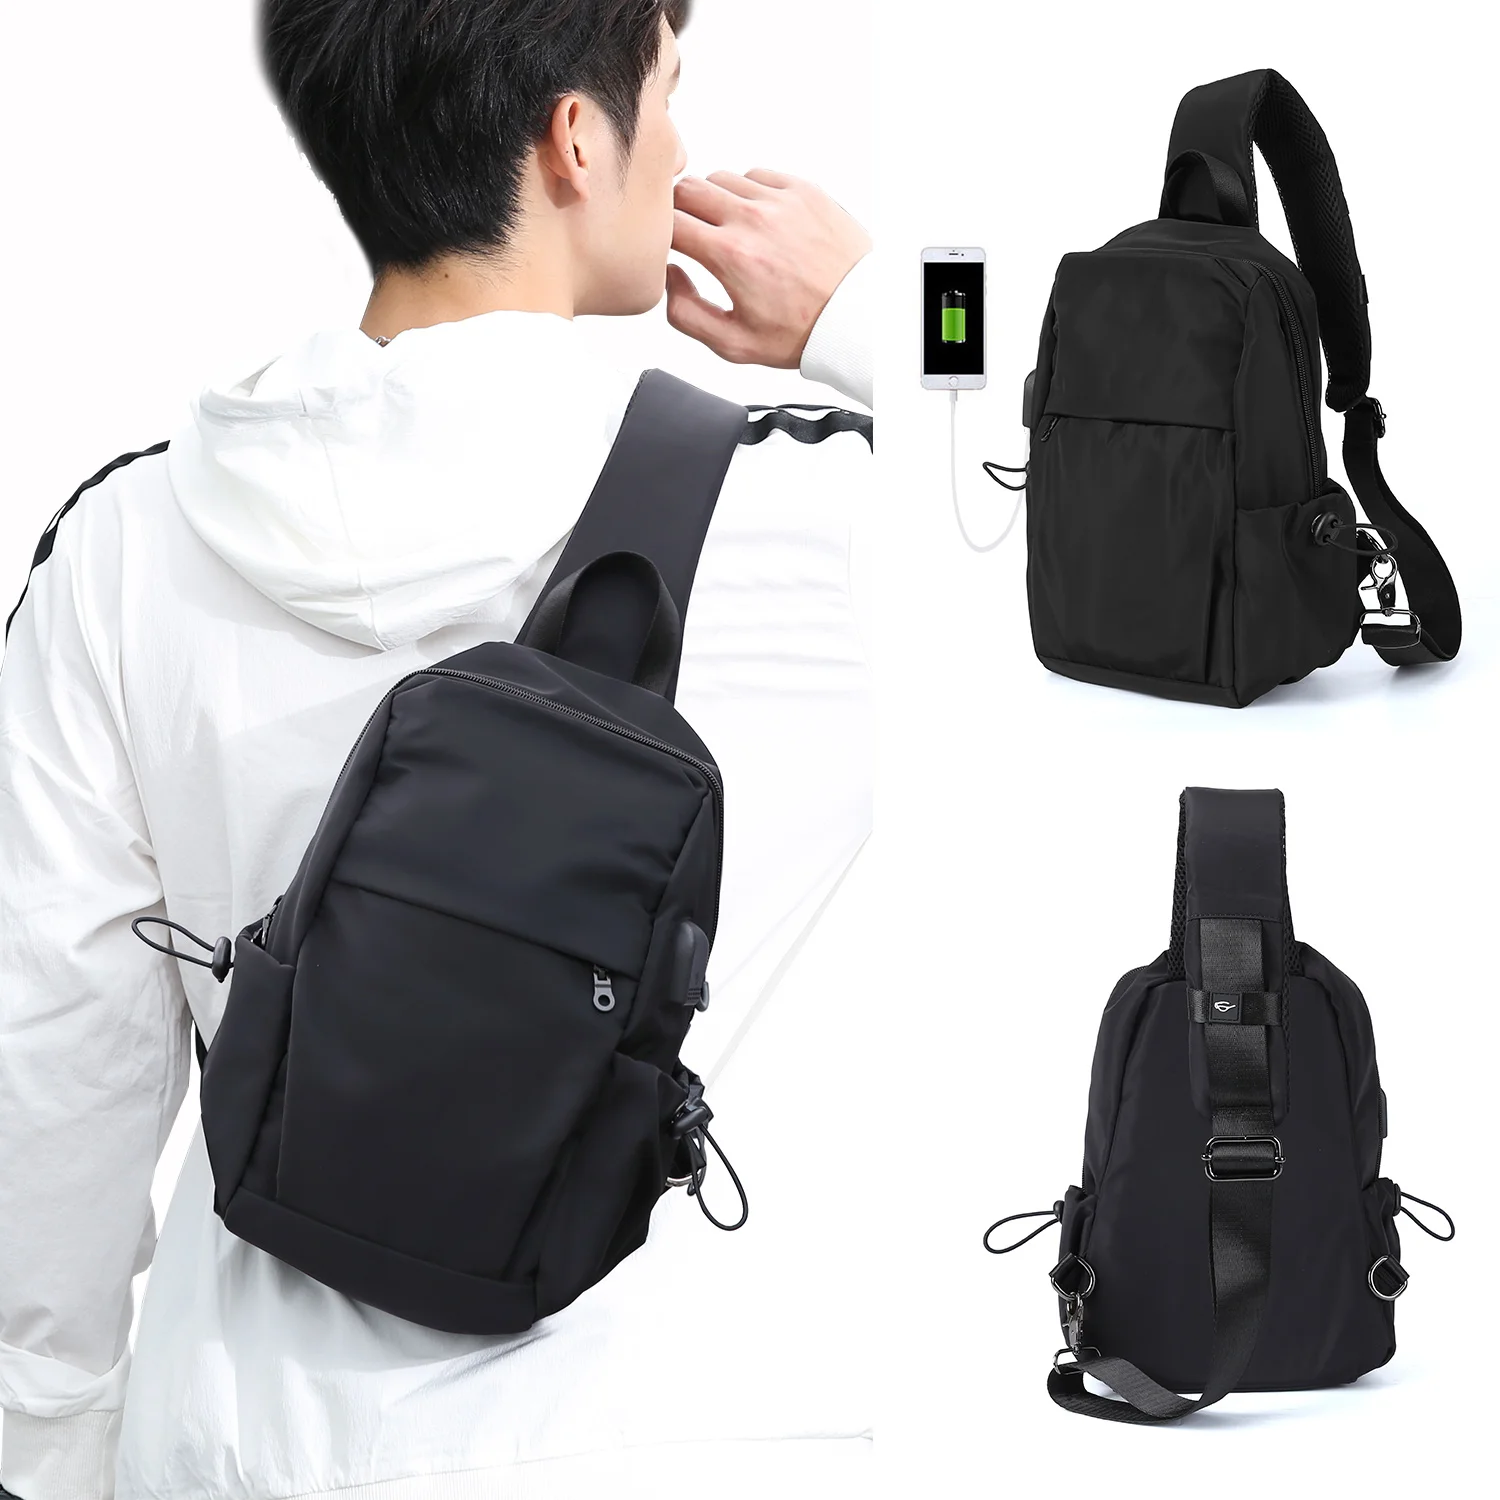 

Small Black Sling Bag Crossbody Backpack Shoulder Bag for Men Women, Lightweight Waterproof One Strap Backpack